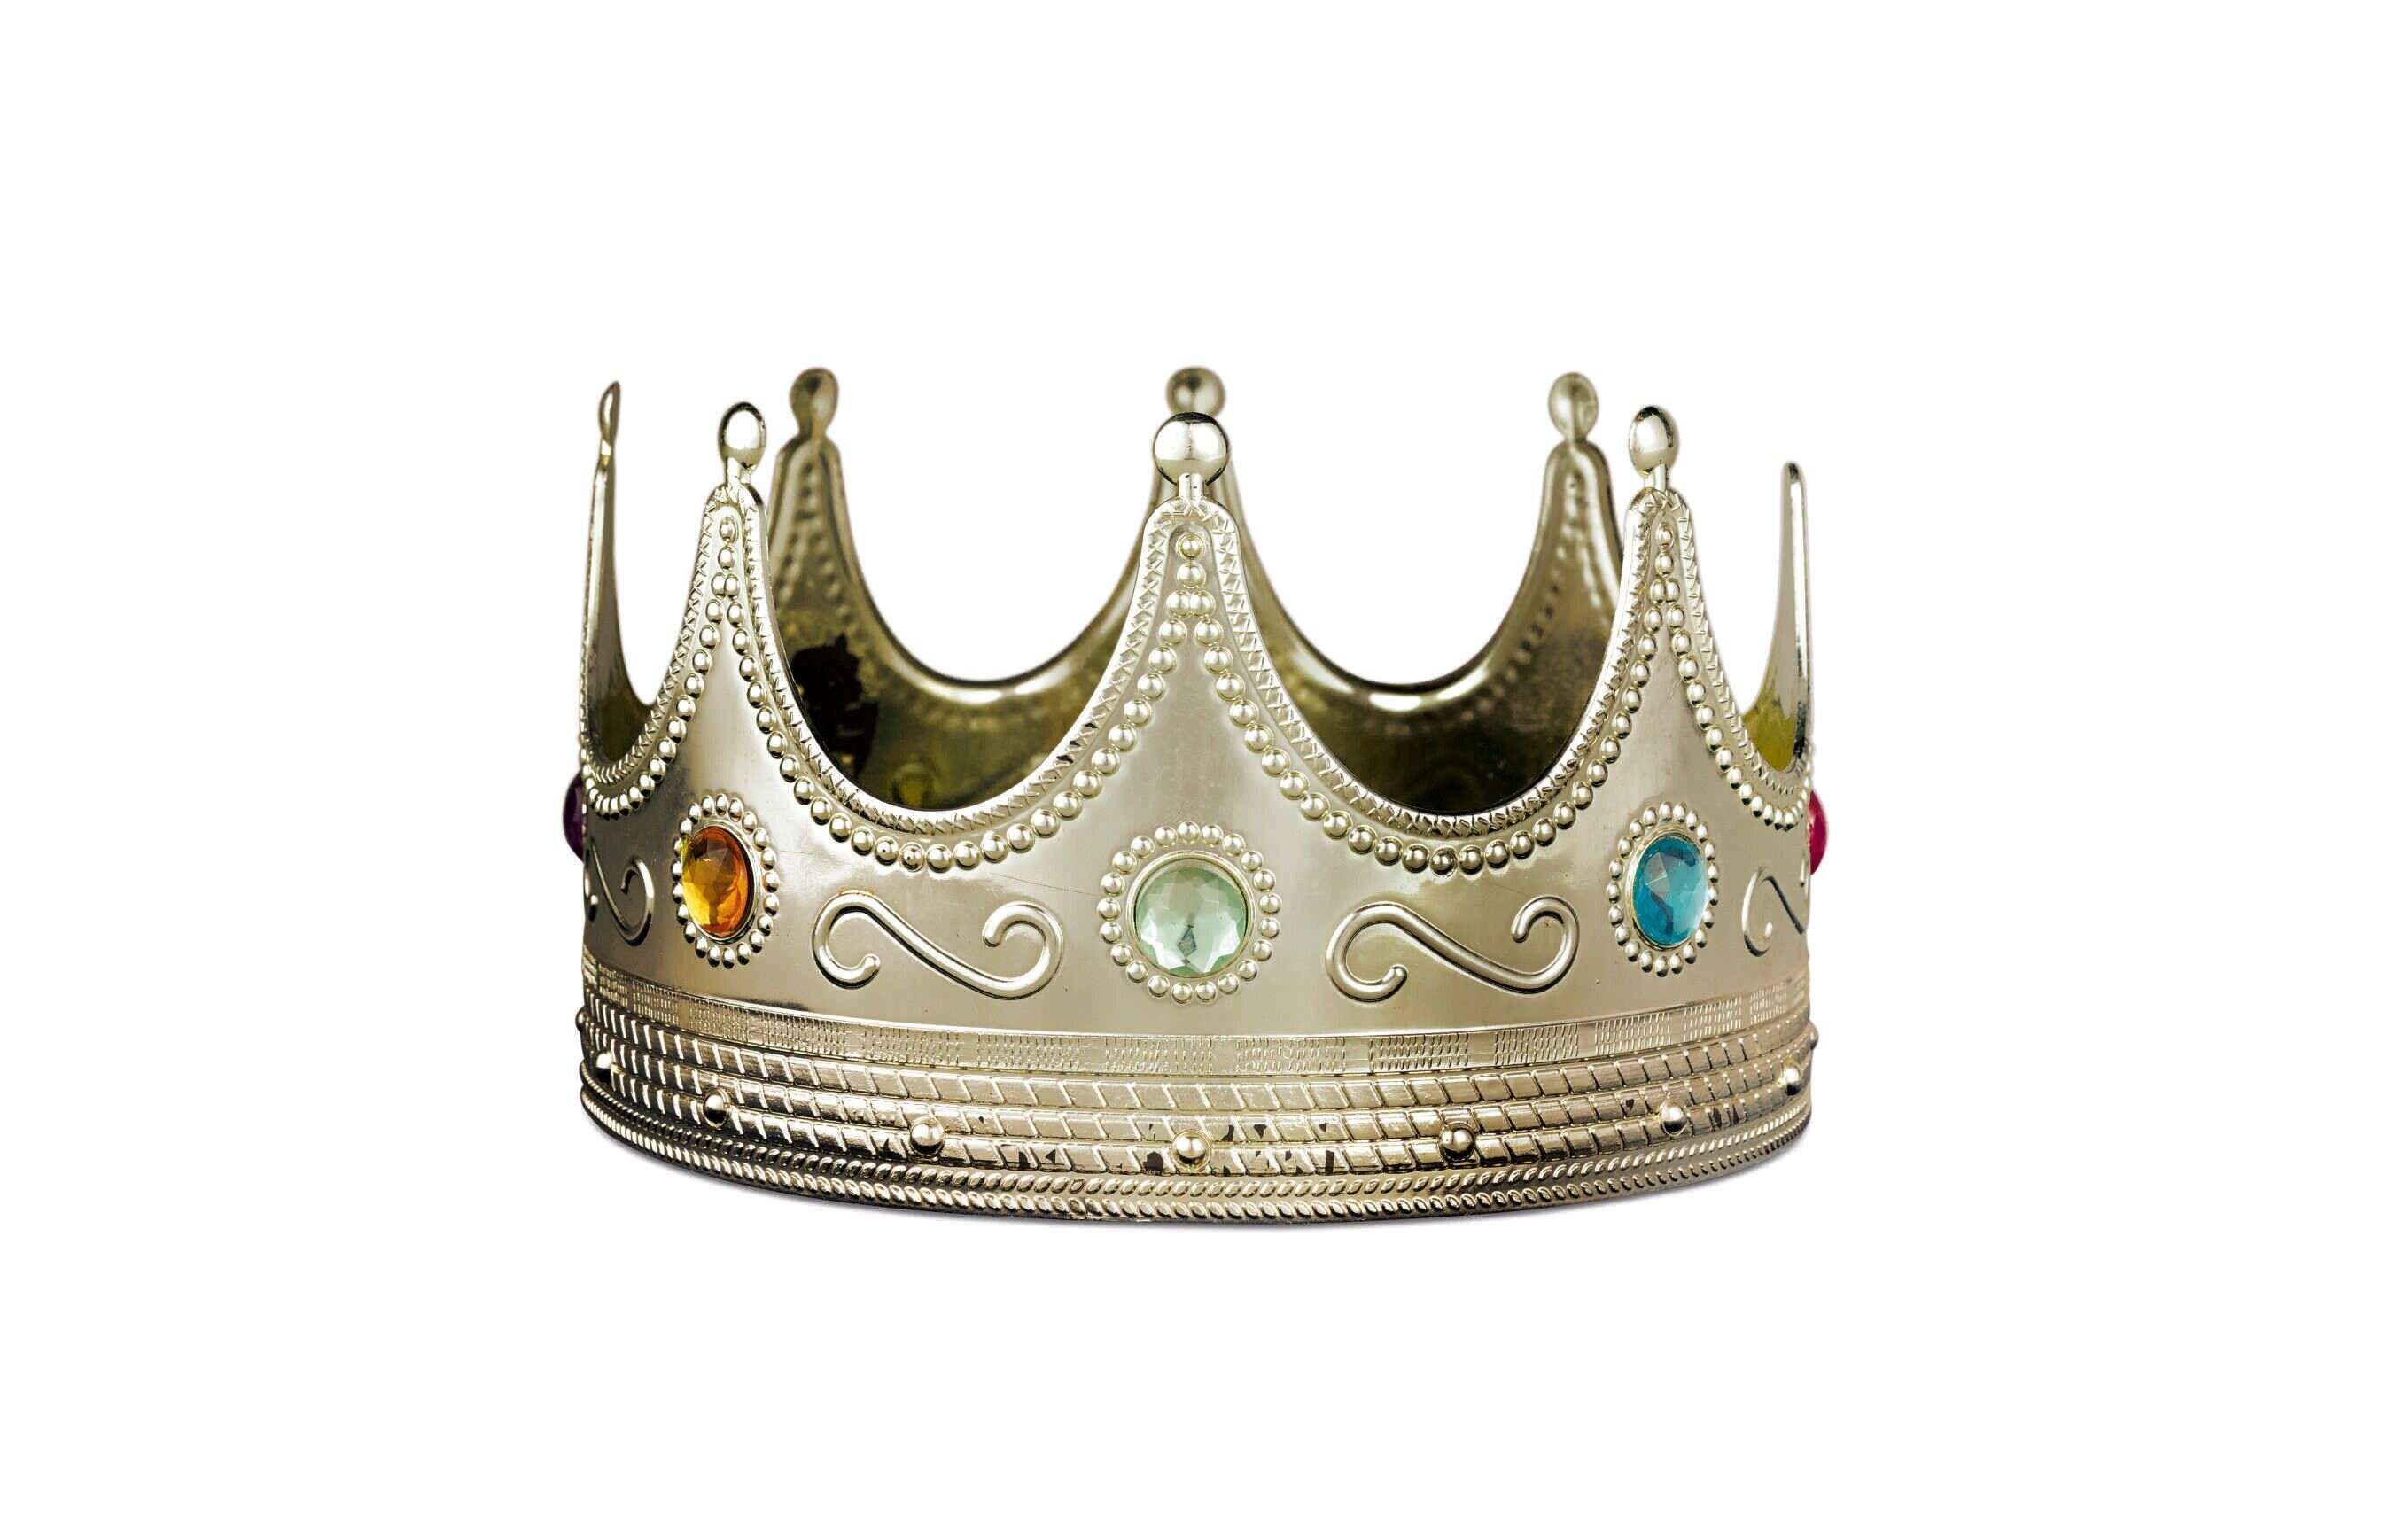 La fameuse couronne en plastique portée par le rappeur Notorious B.I.G.